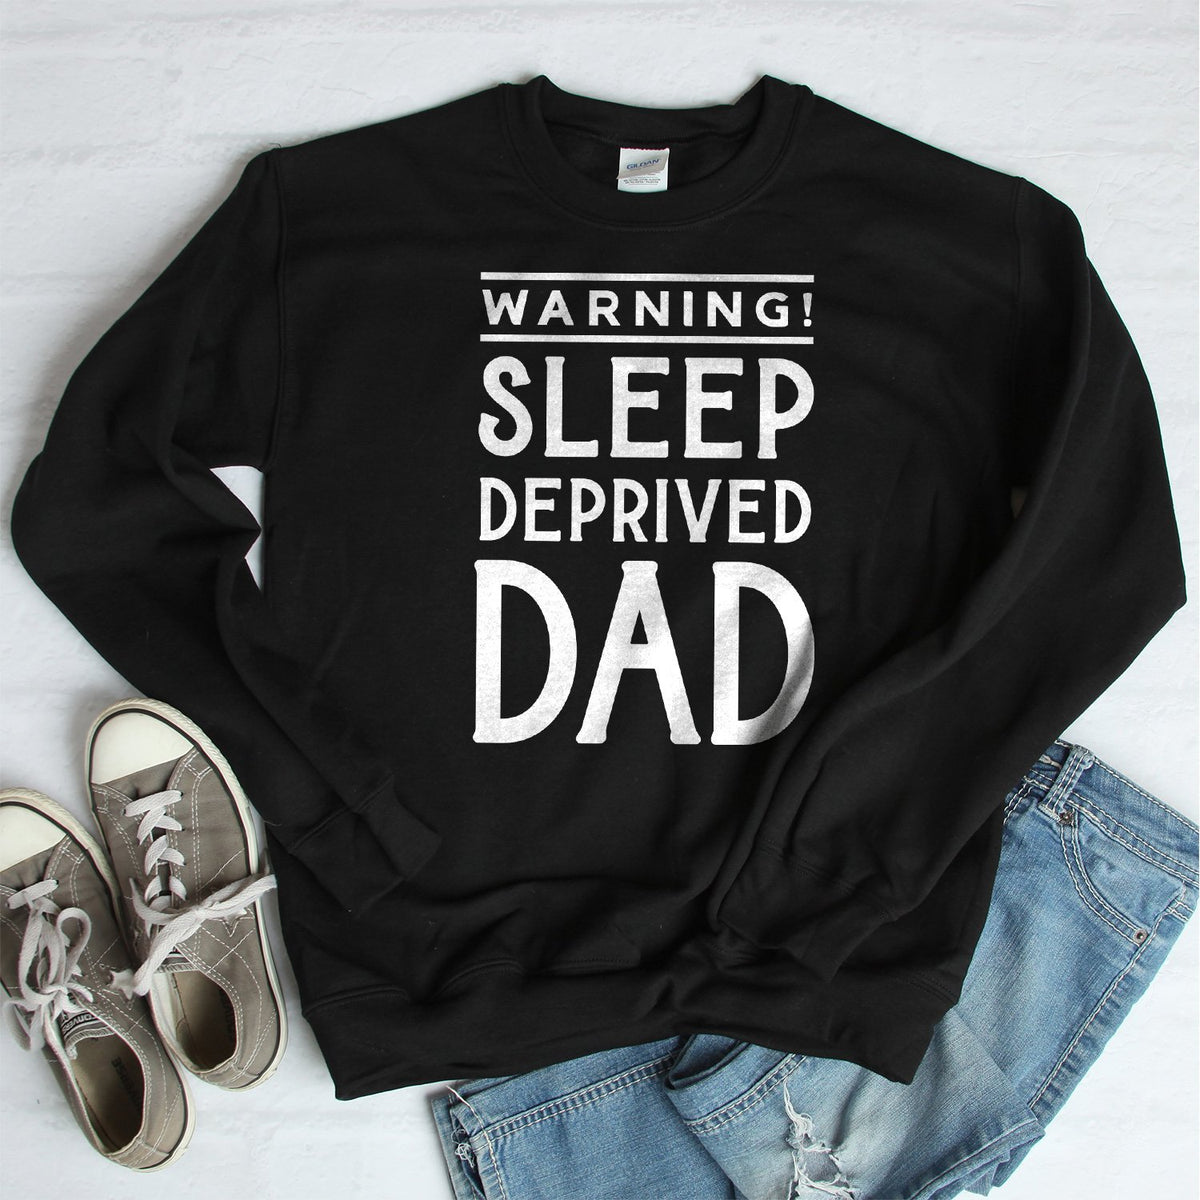 Warning! Sleep Deprived Dad - Long Sleeve Heavy Crewneck Sweatshirt